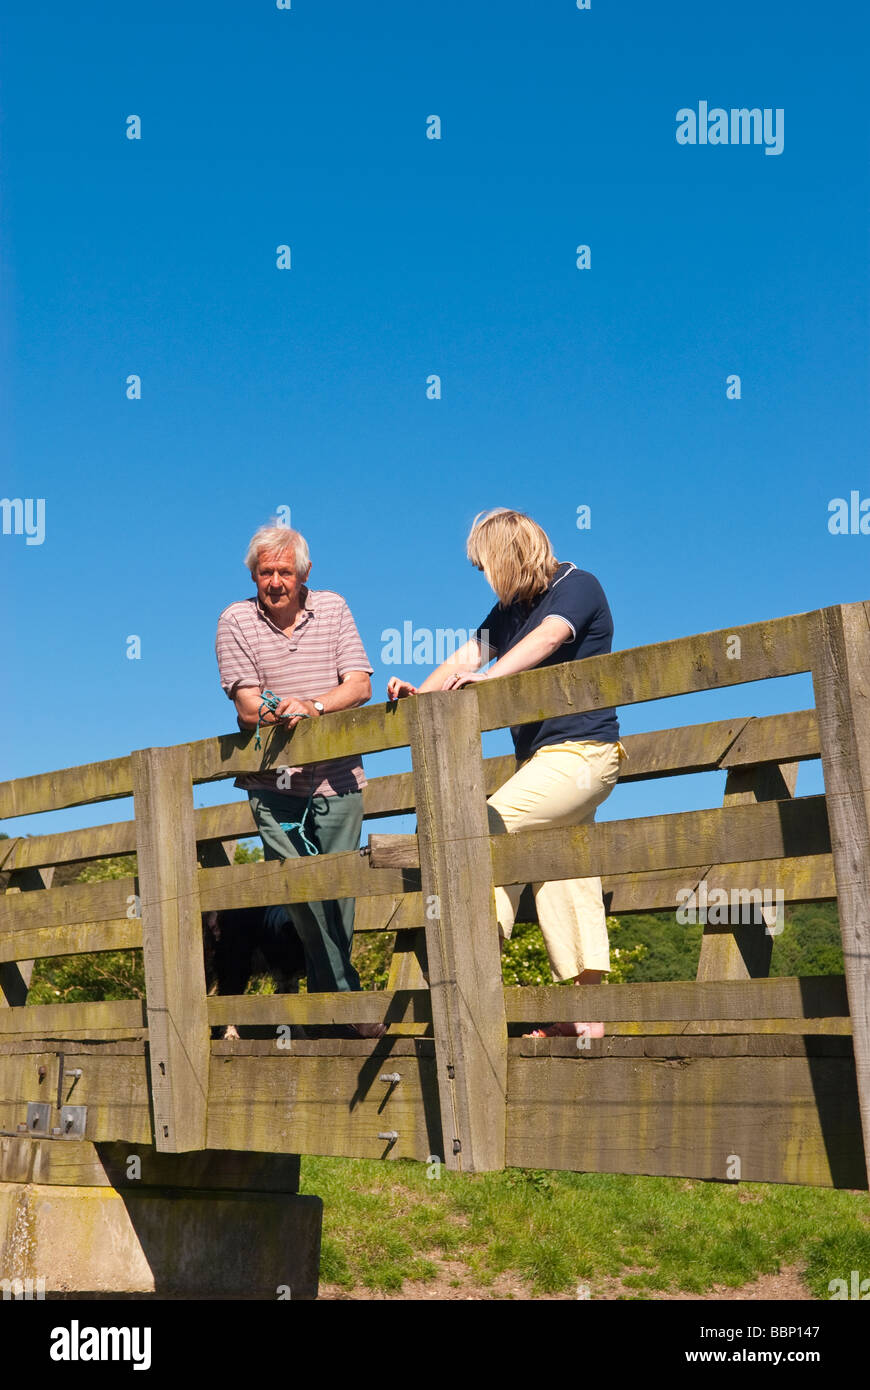 Une femme dans la trentaine et un homme septuagénaire, parler debout sur un pont de la campagne au printemps au Royaume-Uni Banque D'Images